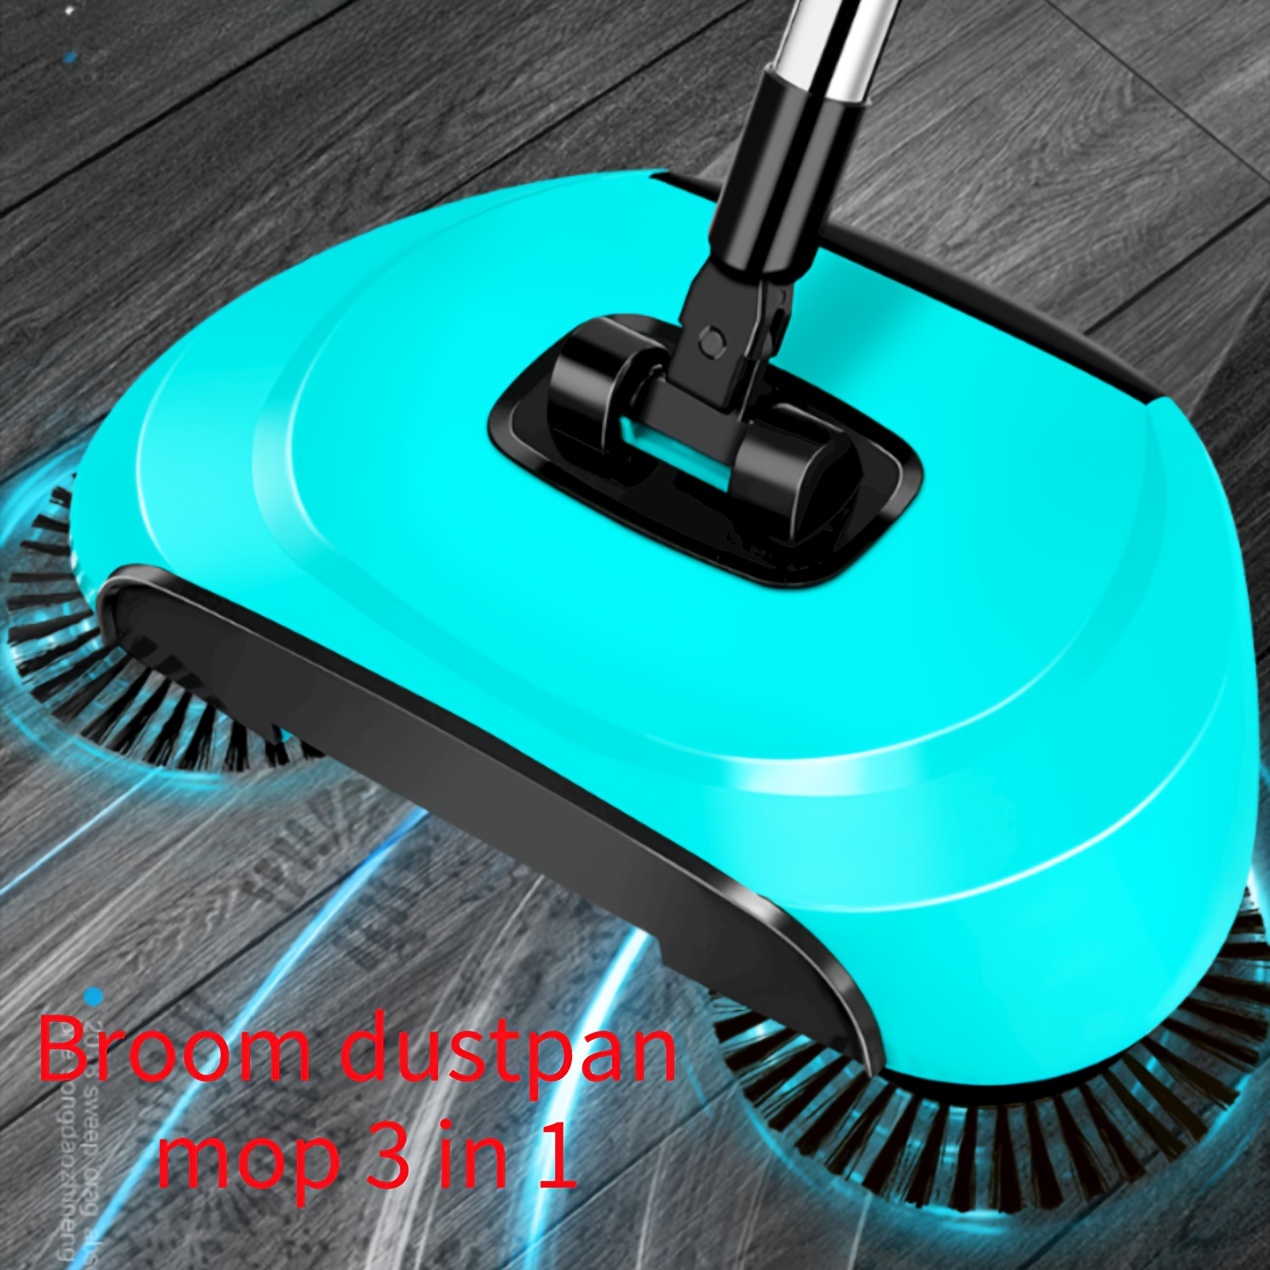 Mopa Limpiador Vapor 10 en 1 - Vacuum Cleaner fregona eléctrica para T –